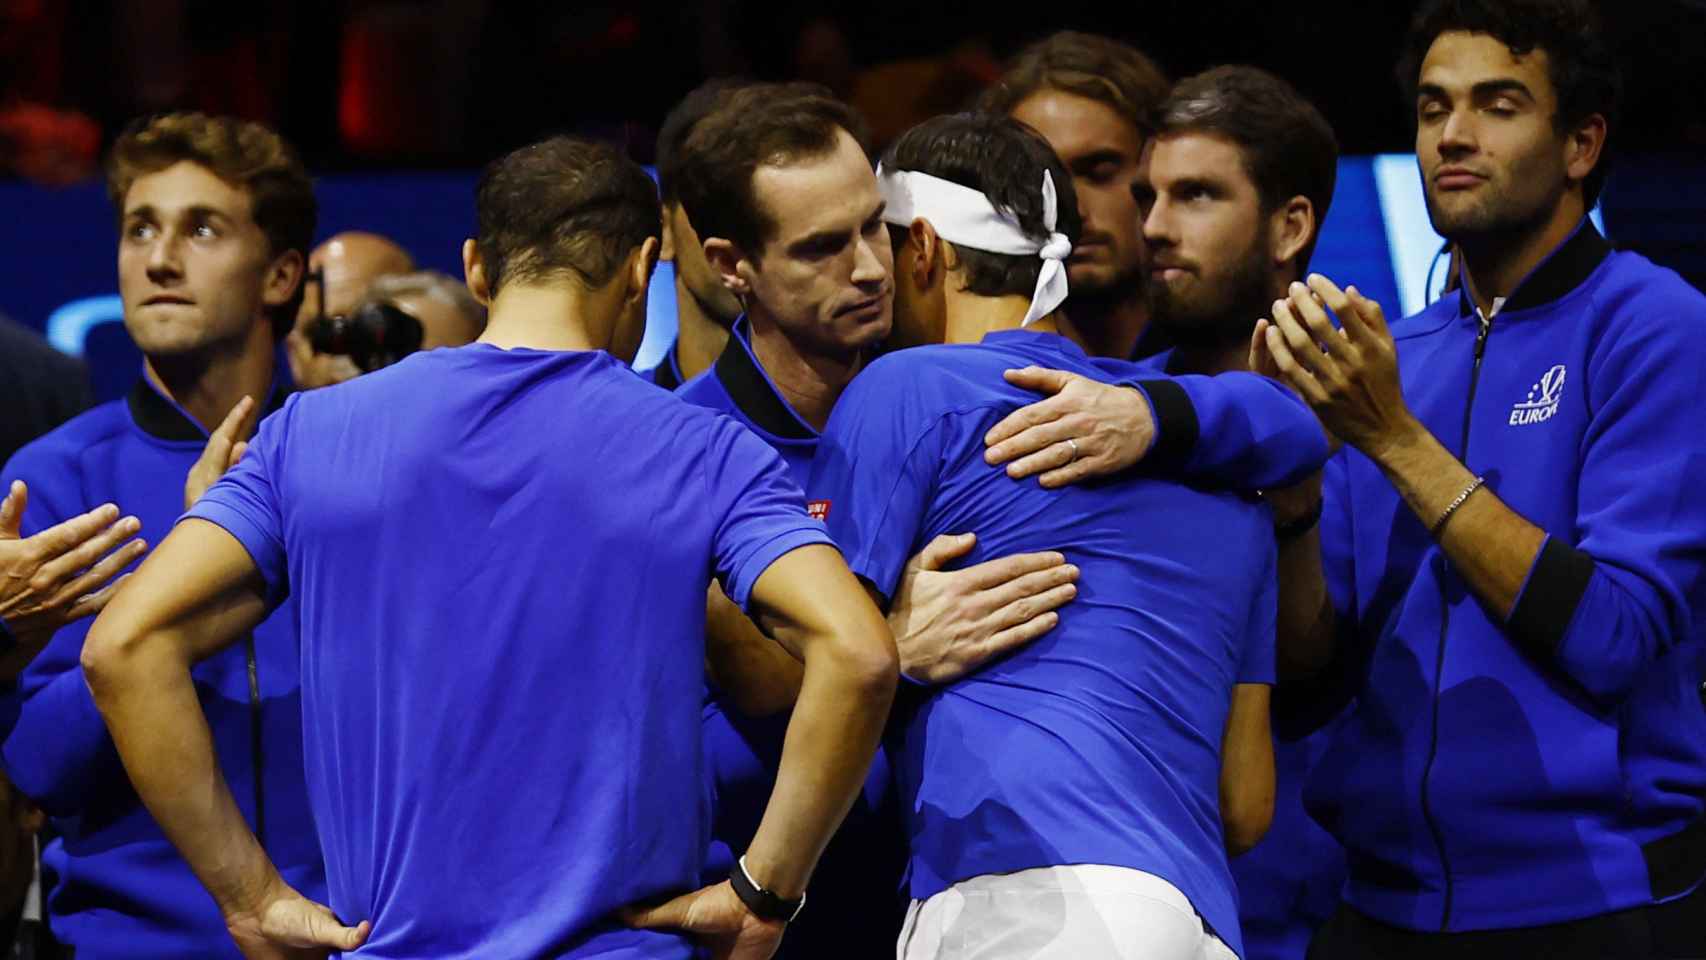 El equipo de Europa despide a Nadal y Federer tras el partido